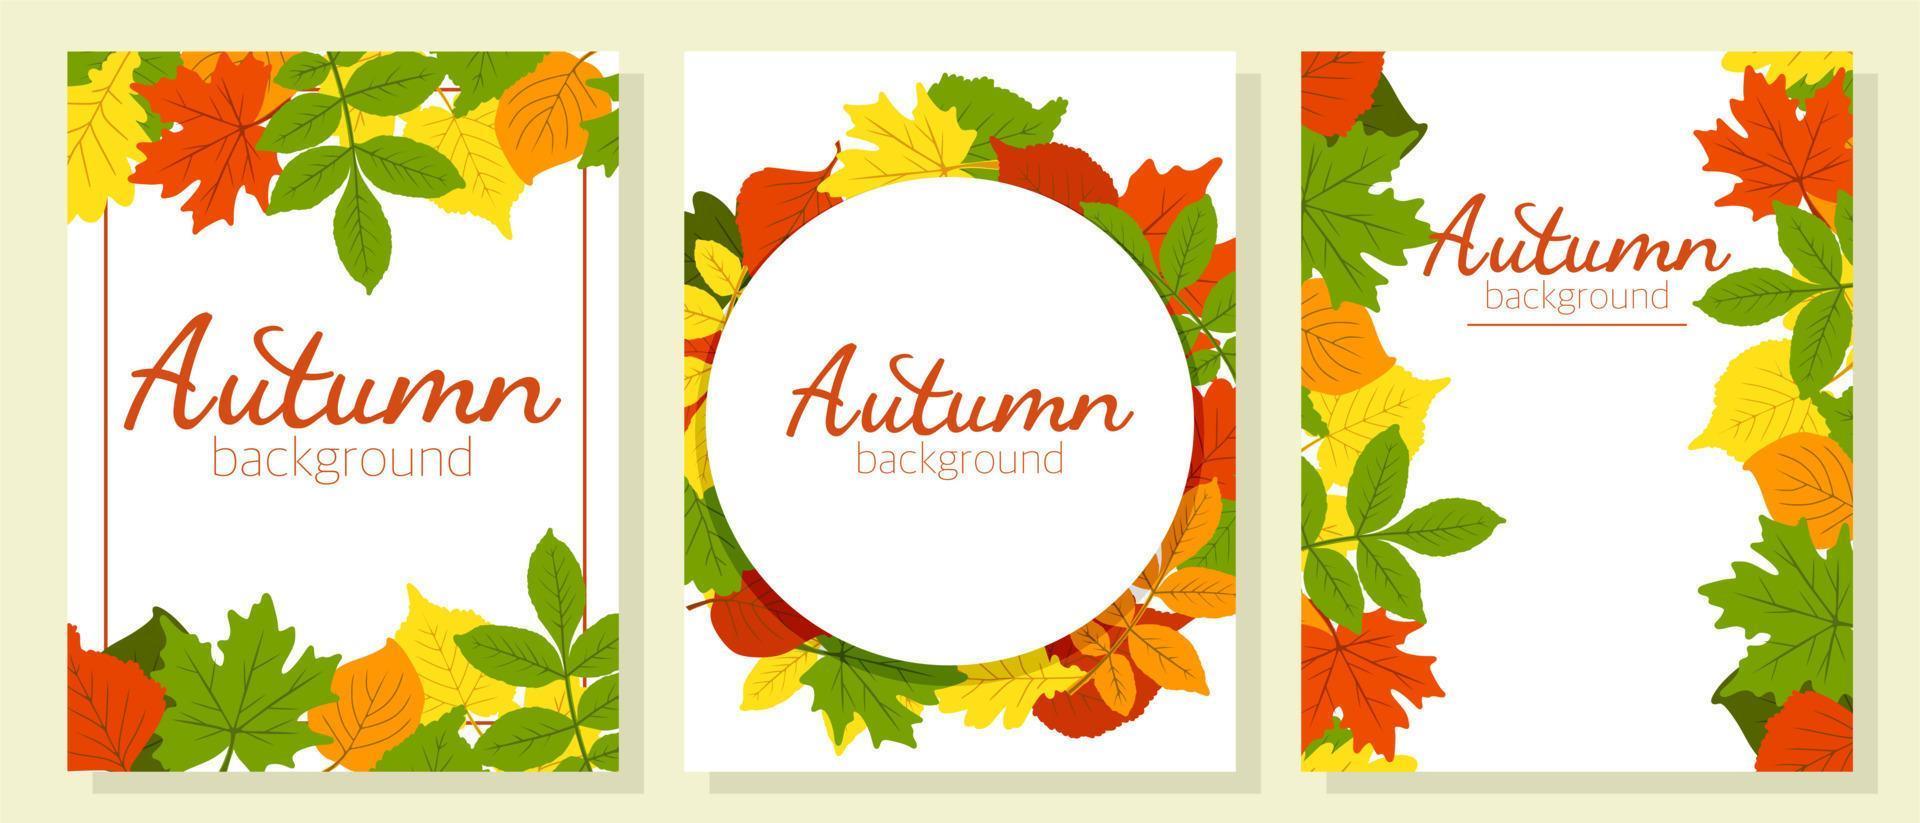 Poster modisch zum Thema Herbst. die Blätter sind Eiche, Birke, Espe, Ahorn. Platz zum Kopieren. geeignet für Druck, Plakate, Postkarten, Websites. Vektor-Illustration. vektor